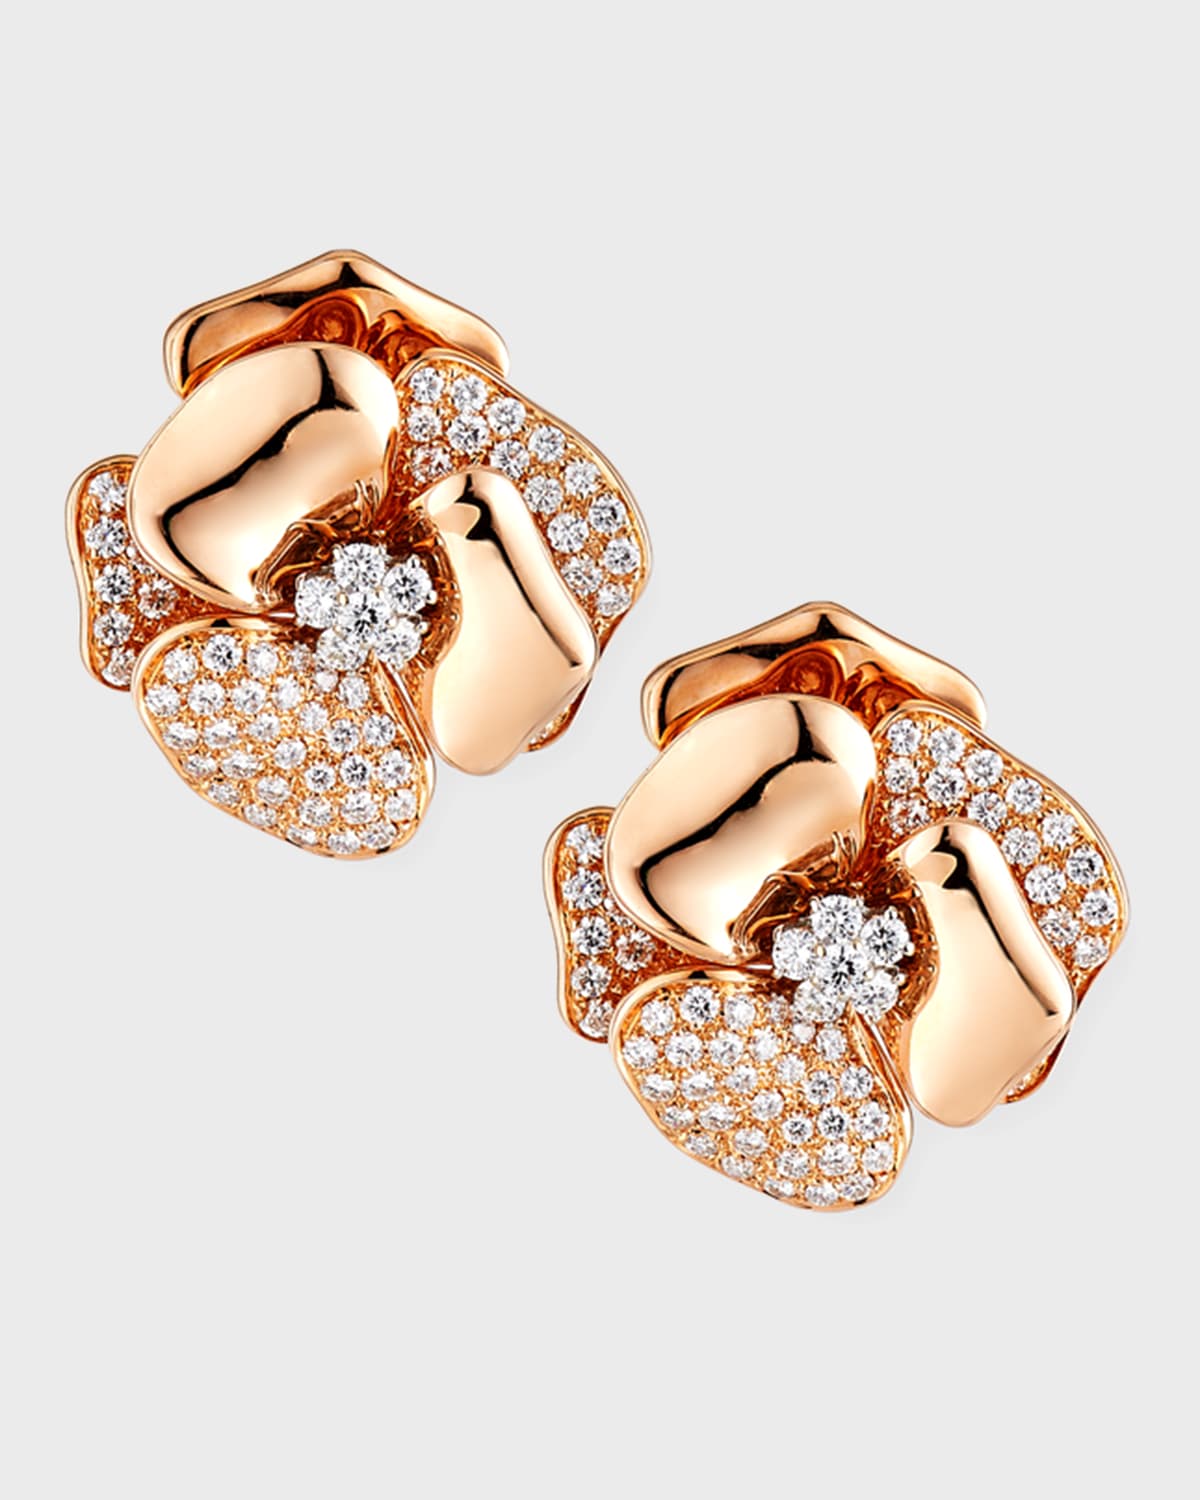 18K Rose Gold Flower Earrings with Diamonds